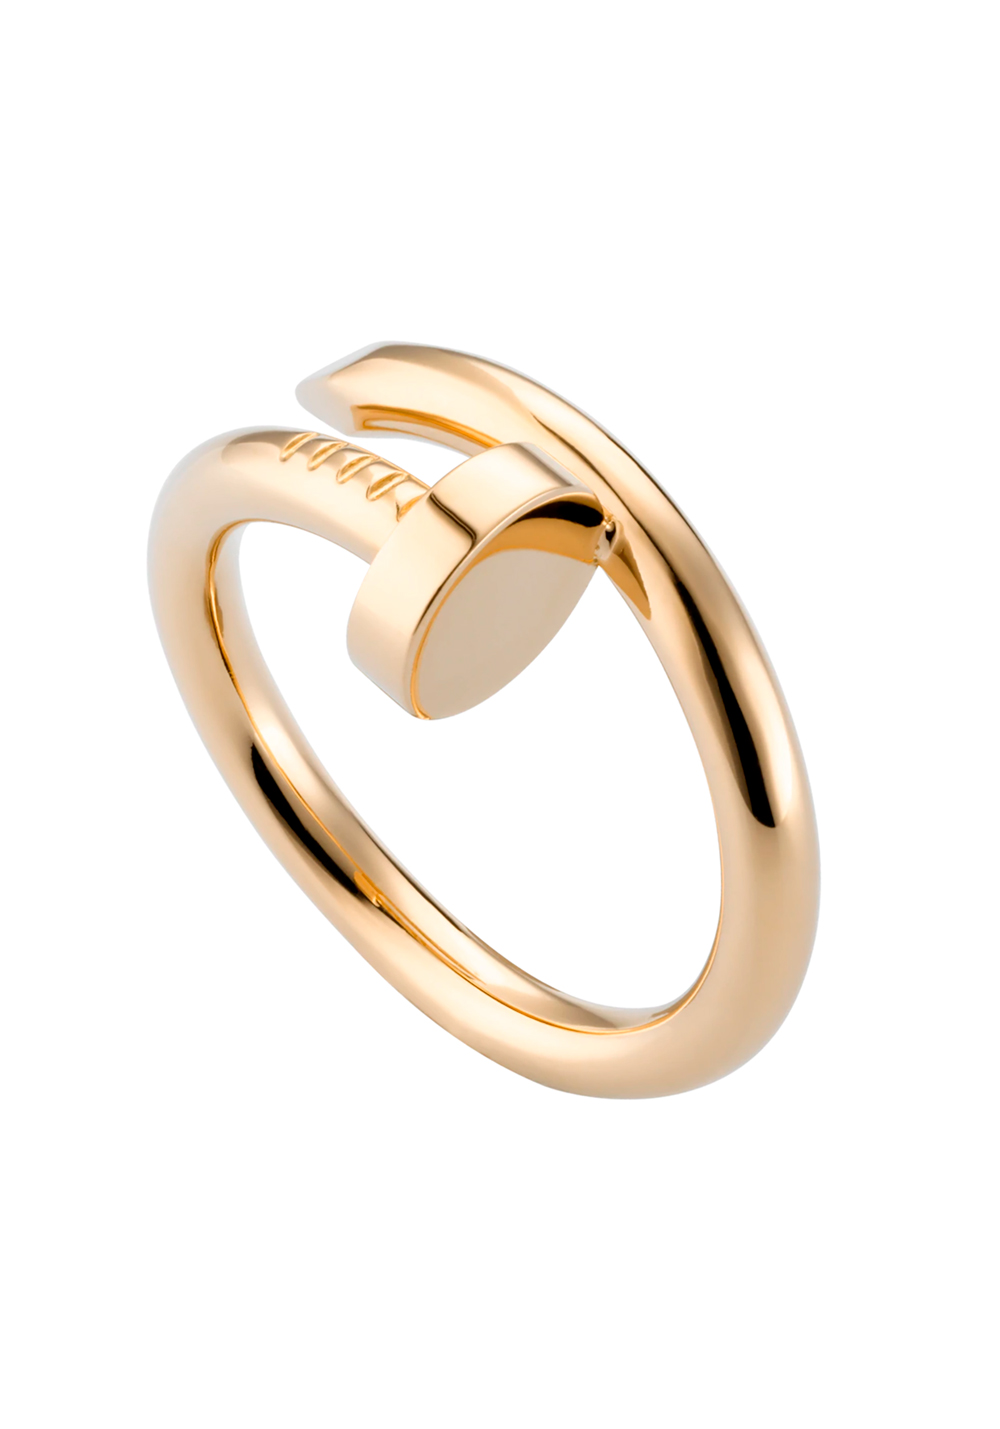 Кольцо Cartier Juste un Clou Yellow Gold Ring B4092600 (28057) купить в Москве, выгодная цена - ломбард на Кутузовском